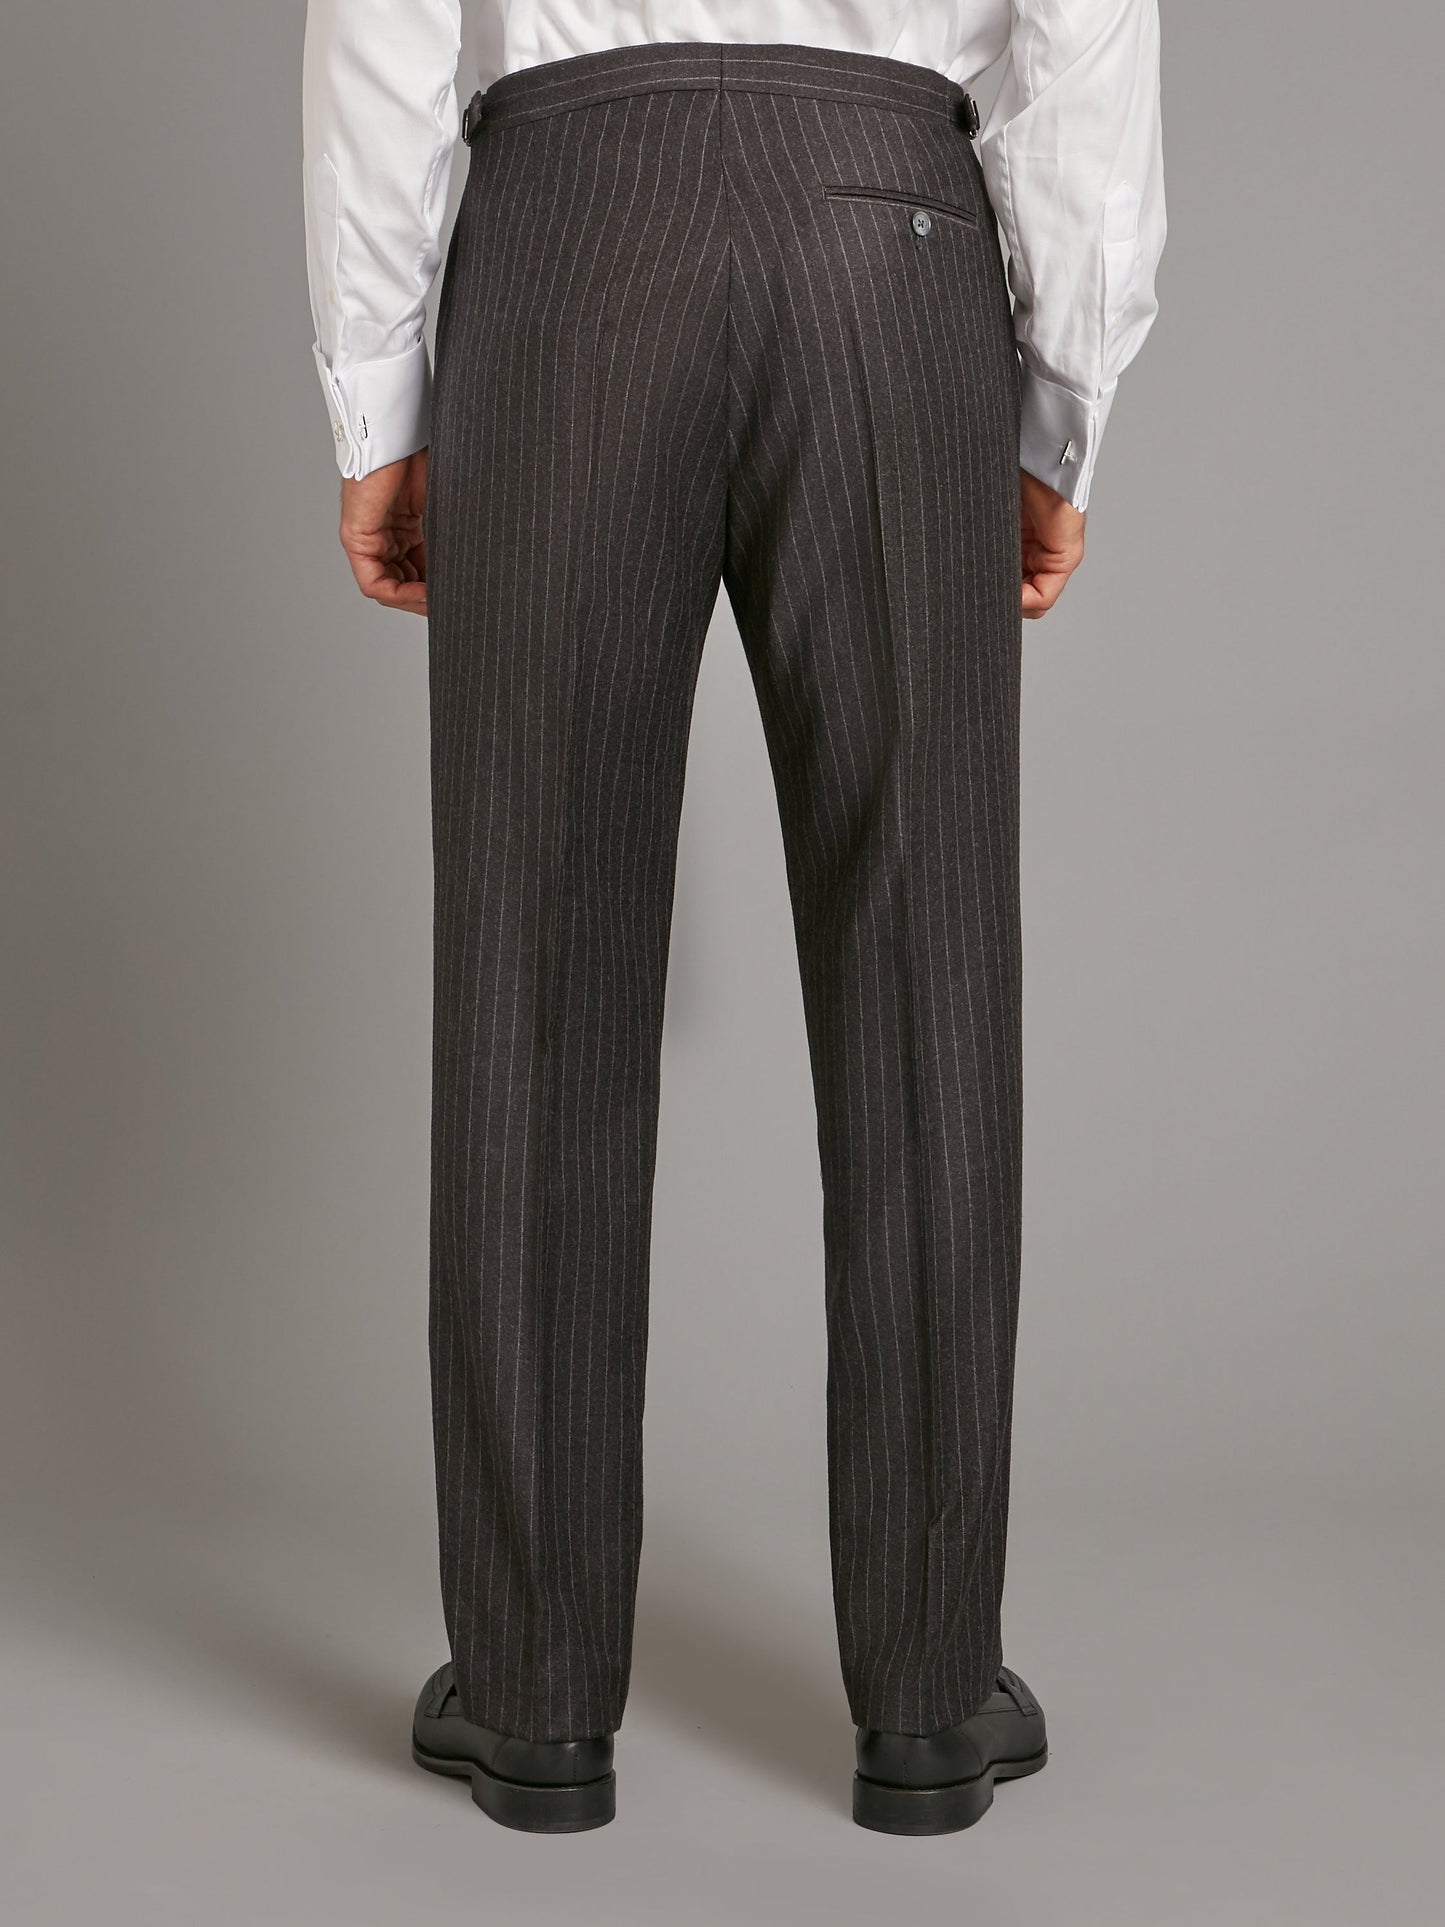 Cadogan Suit Flannel - Chalk-stripe Charcoal